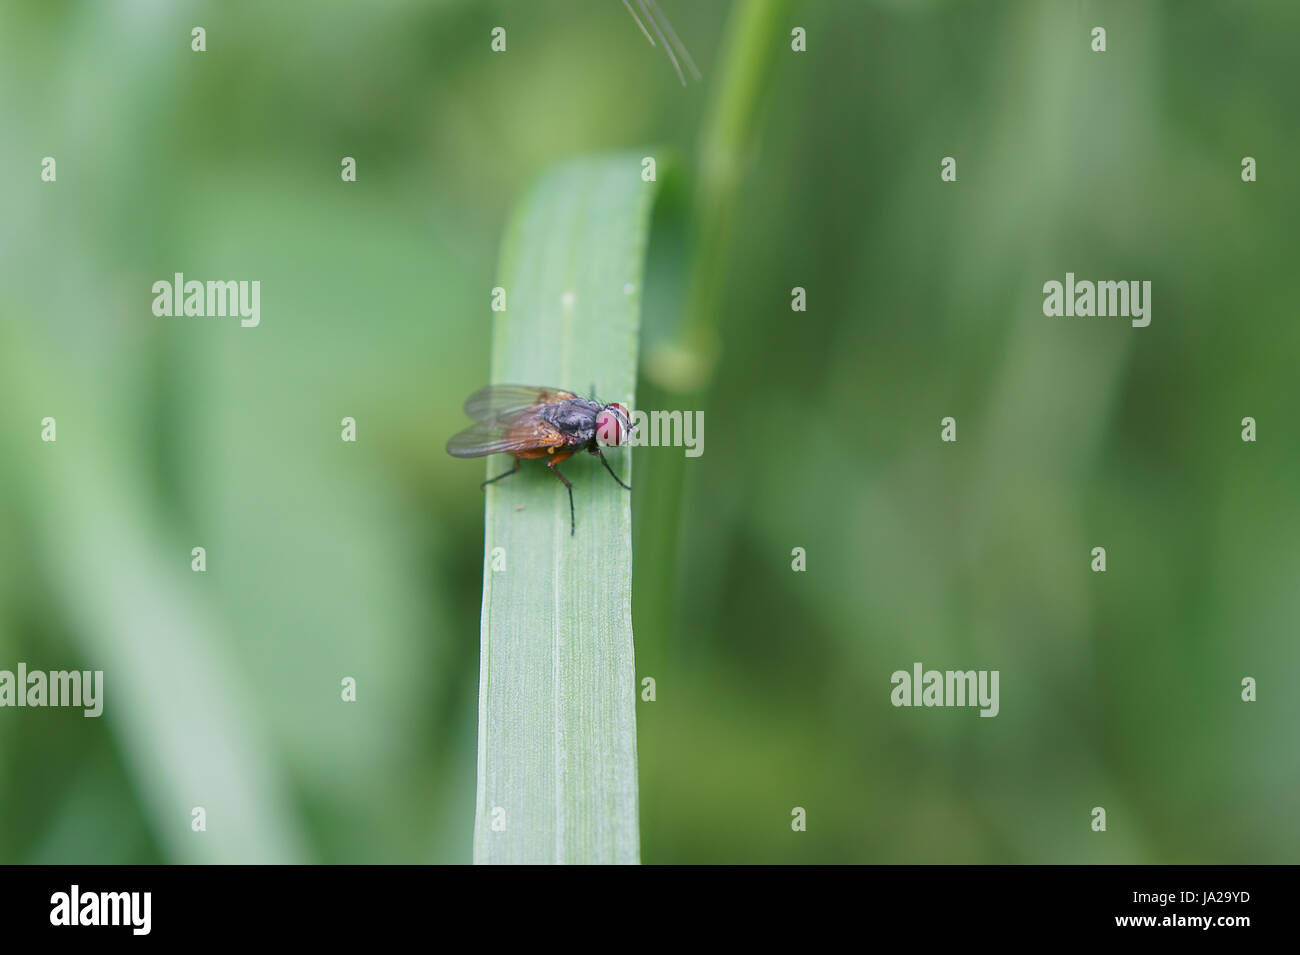 Animali, insetti, volare, macro close-up, macro di ammissione, vista ravvicinata, animale, Foto Stock